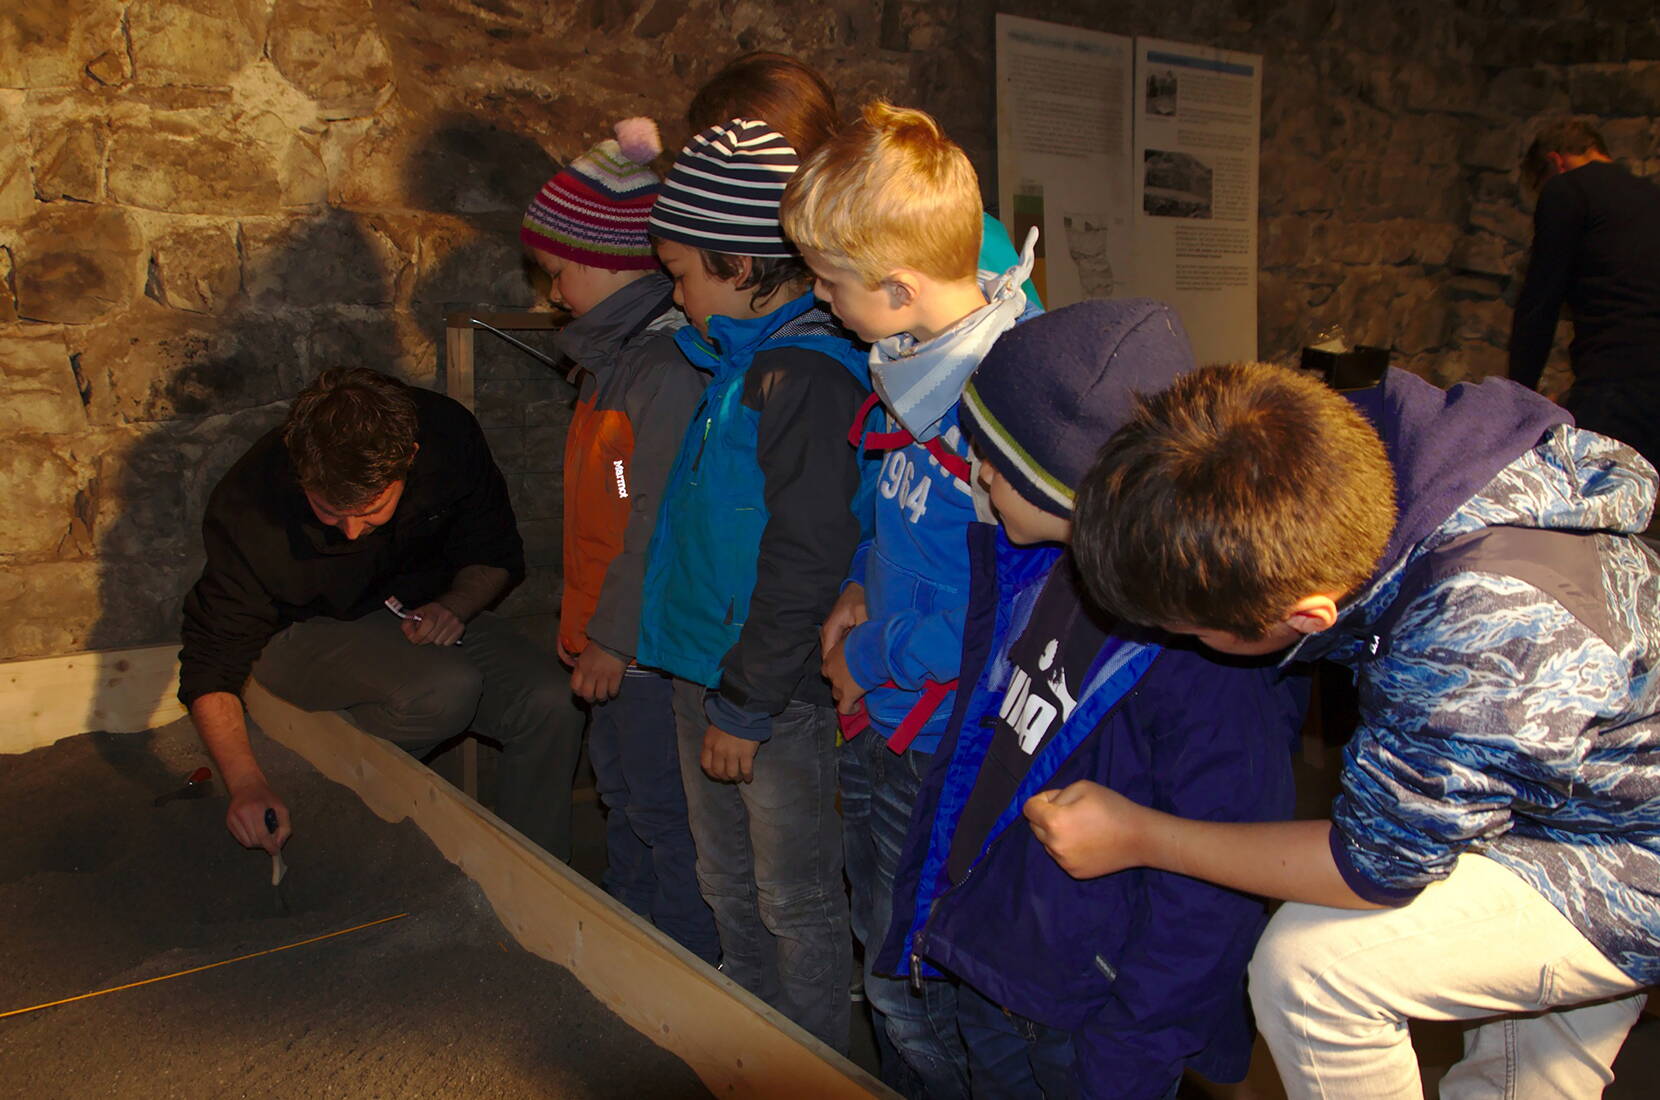 Familienausflug Schloss Werdenberg. Kleine ArchäologInnen heben unter der Leitung einer Fachperson entdeckte Fundstücke korrekt aus der Erde, ordnen sie und besprechen deren Bedeutung.